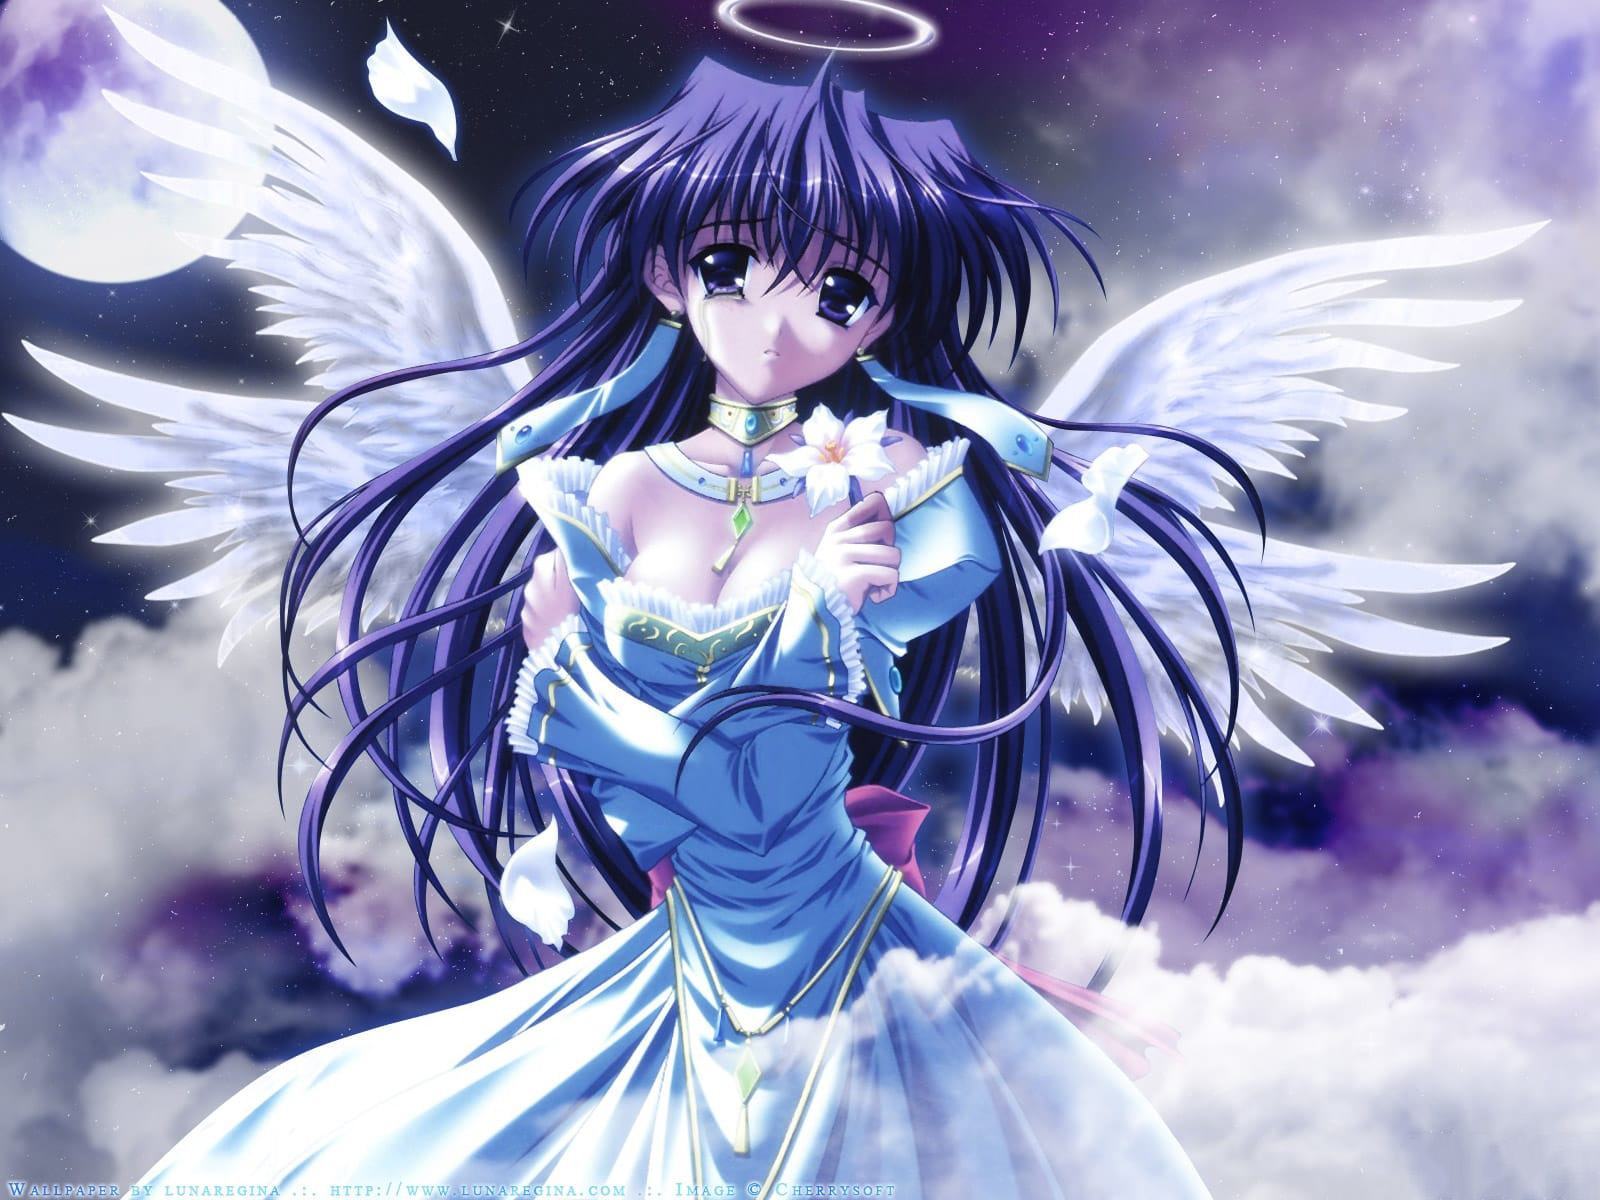 Hình ảnh anime thiên thần đẹp, dễ thương nhất